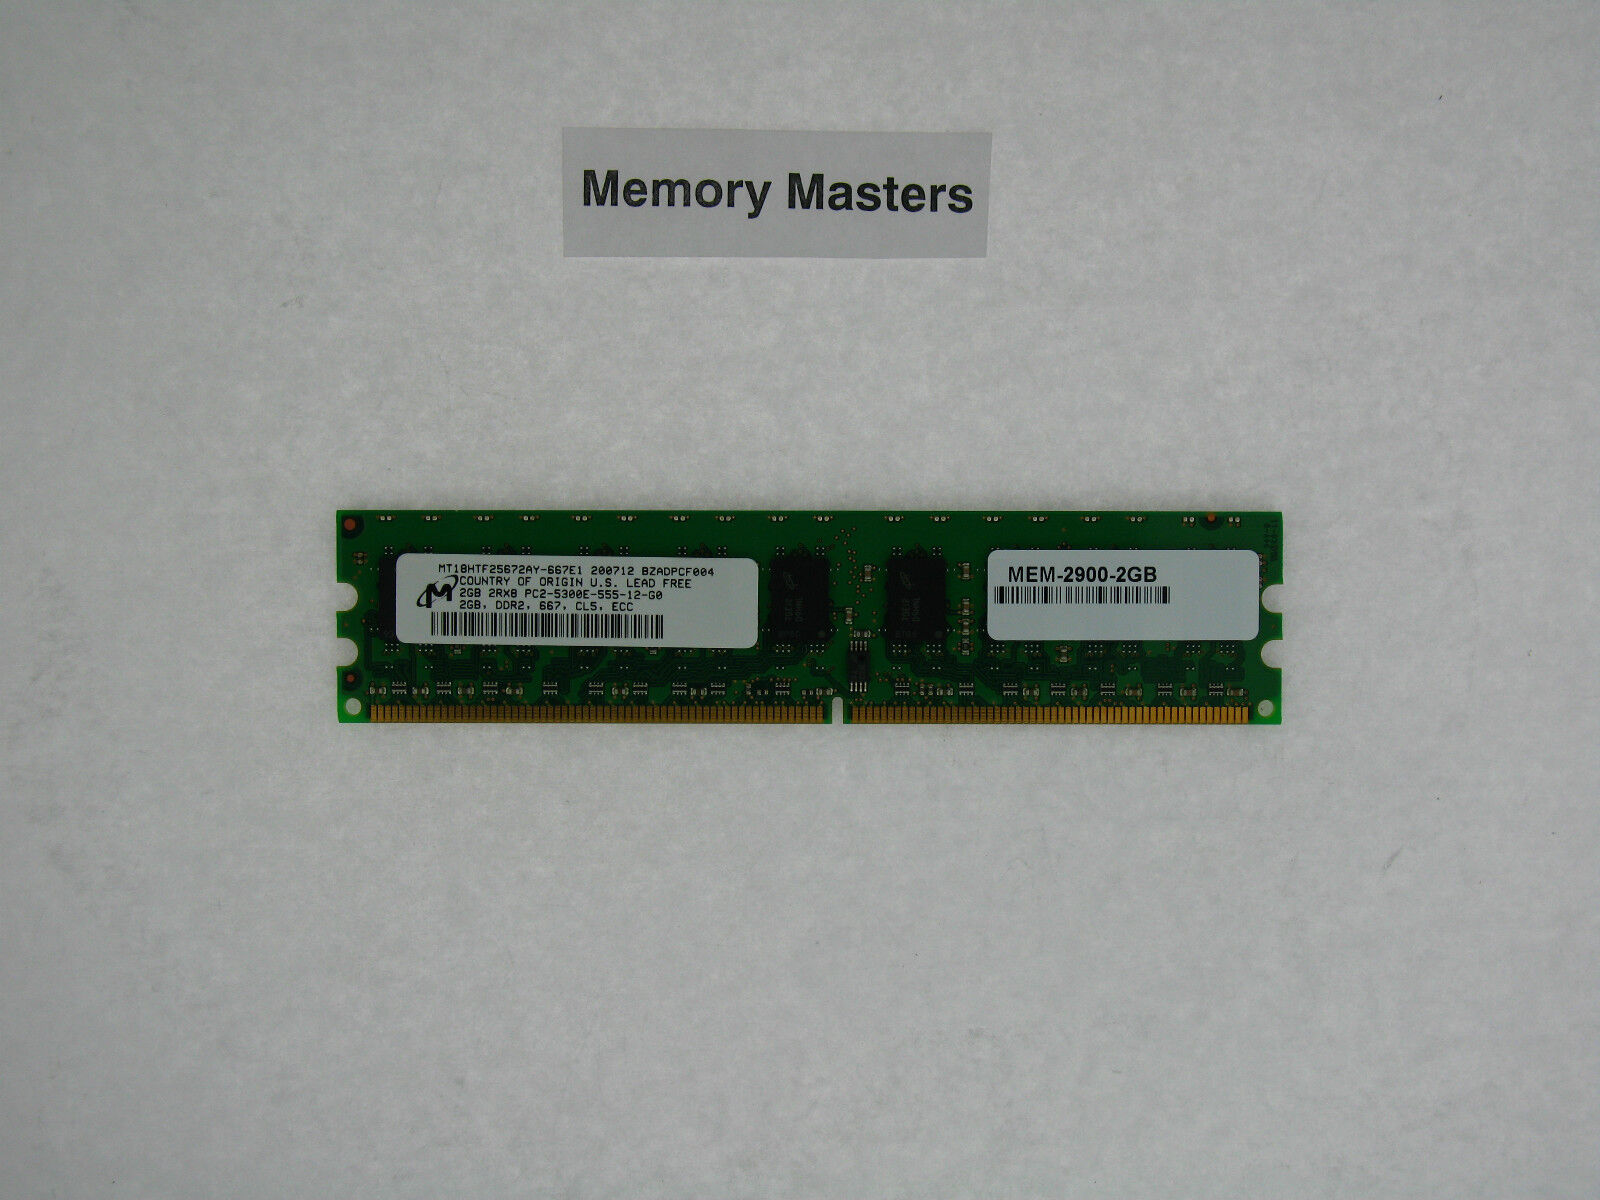 MEM-2900-2GB 2GB Approved DRAM Memory for Cisco 2900